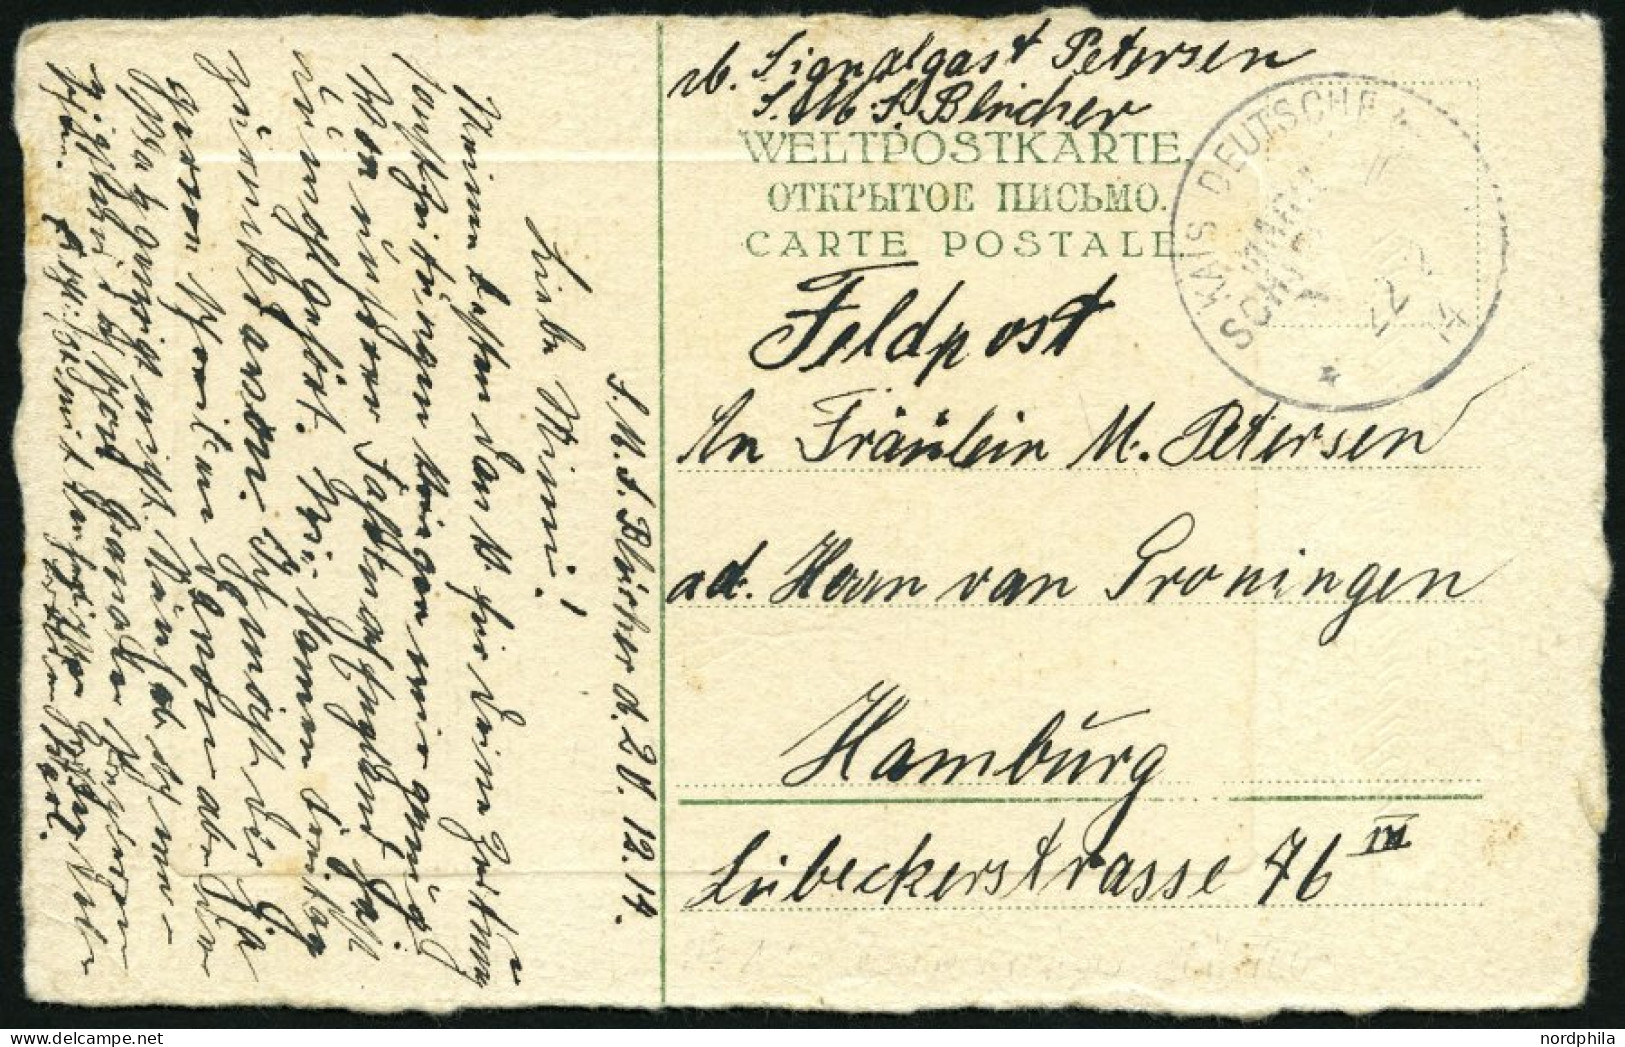 MSP VON 1914 - 1918 12 (BLÜCHER), 22.12.14, Feldpostkarte, Pracht - Marittimi